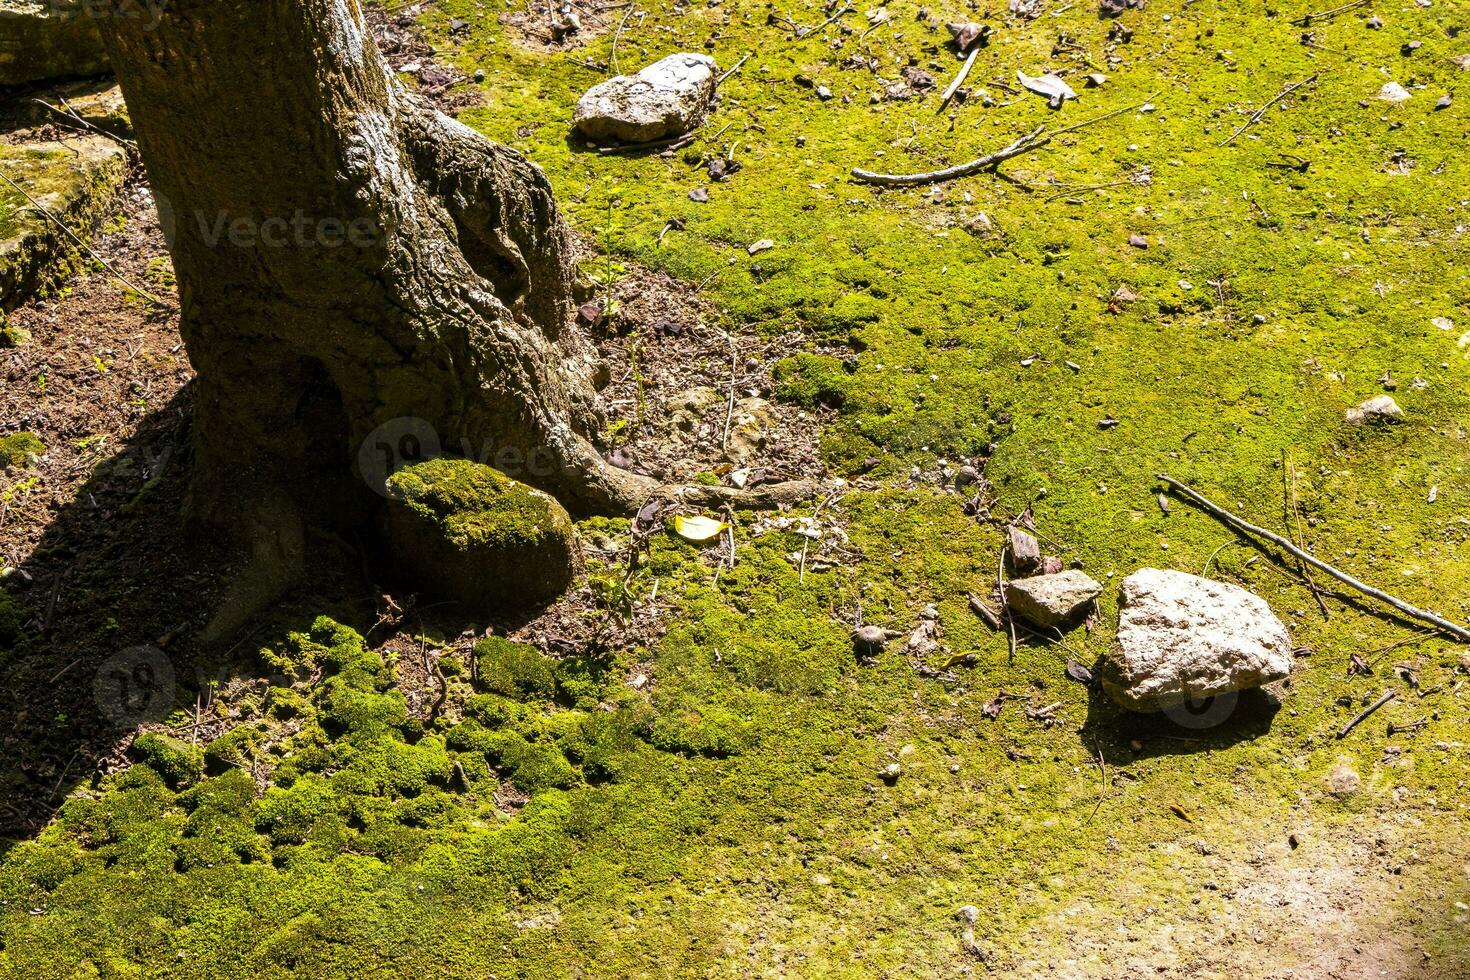 vert mousse herbe pelouse arbre racine sur sol cobá Mexique. photo